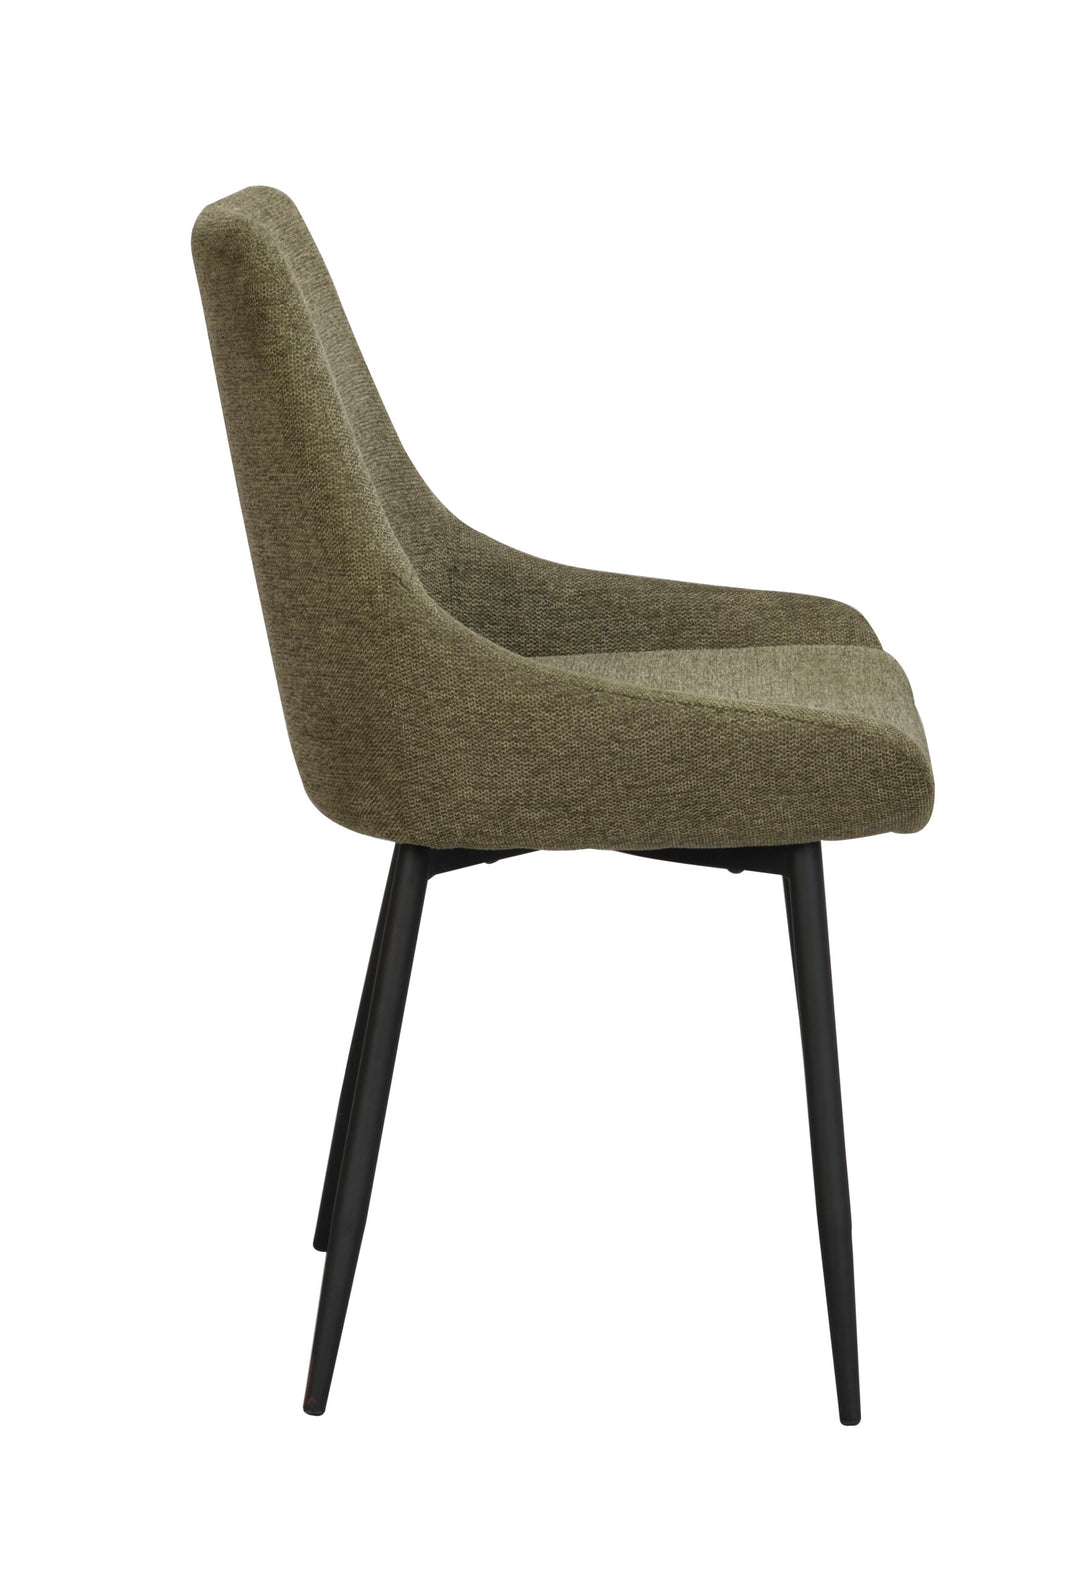 110489_c, Sierra chair, green fabric_black